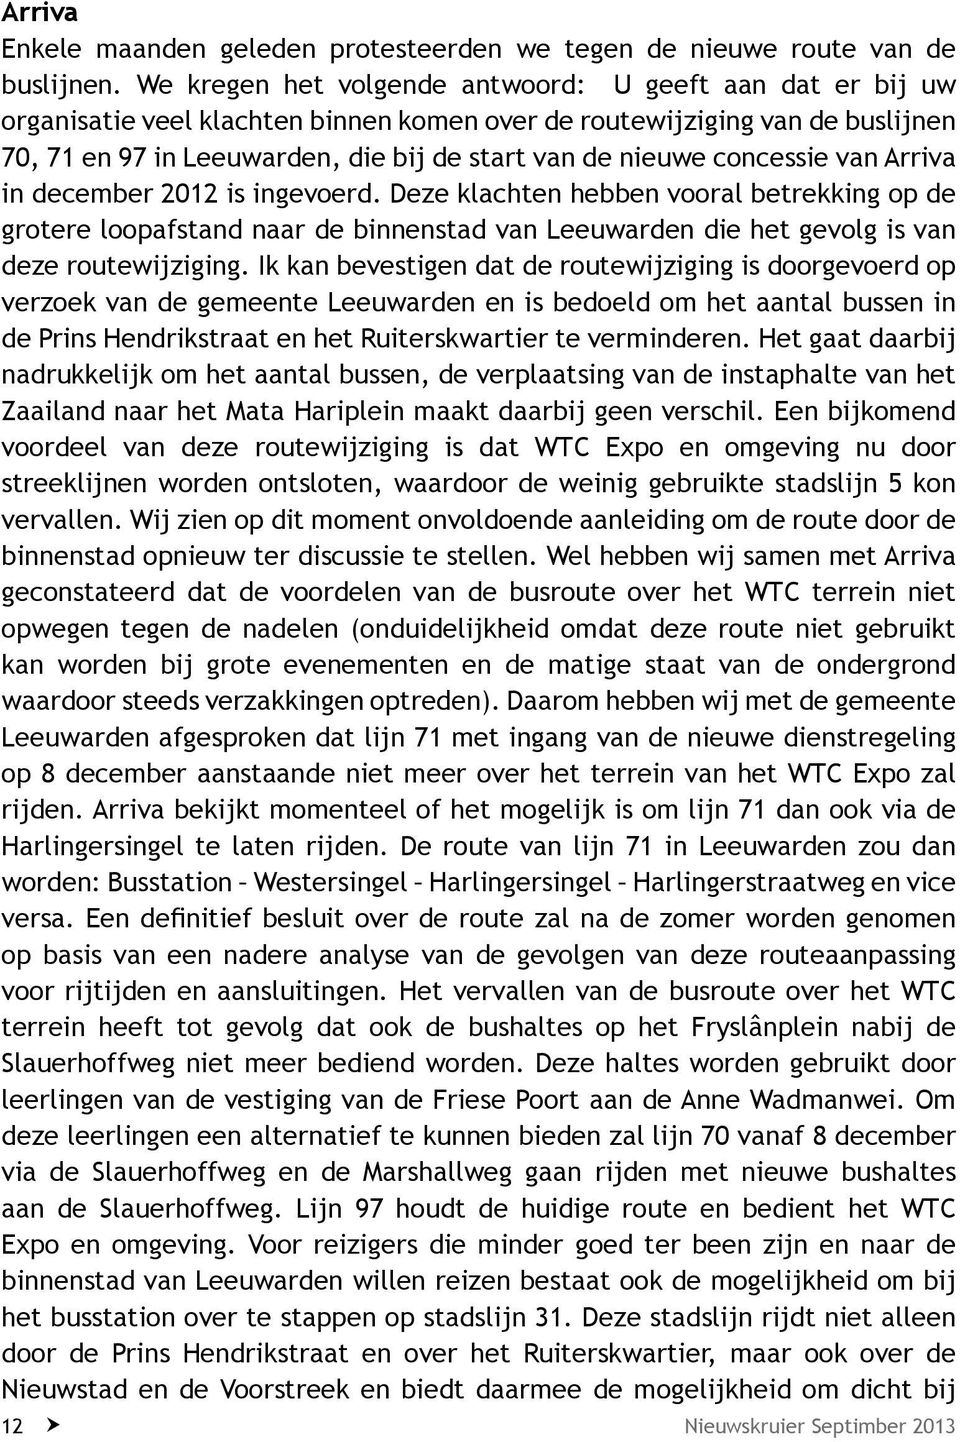 concessie van Arriva in december 2012 is ingevoerd. Deze klachten hebben vooral betrekking op de grotere loopafstand naar de binnenstad van Leeuwarden die het gevolg is van deze routewijziging.